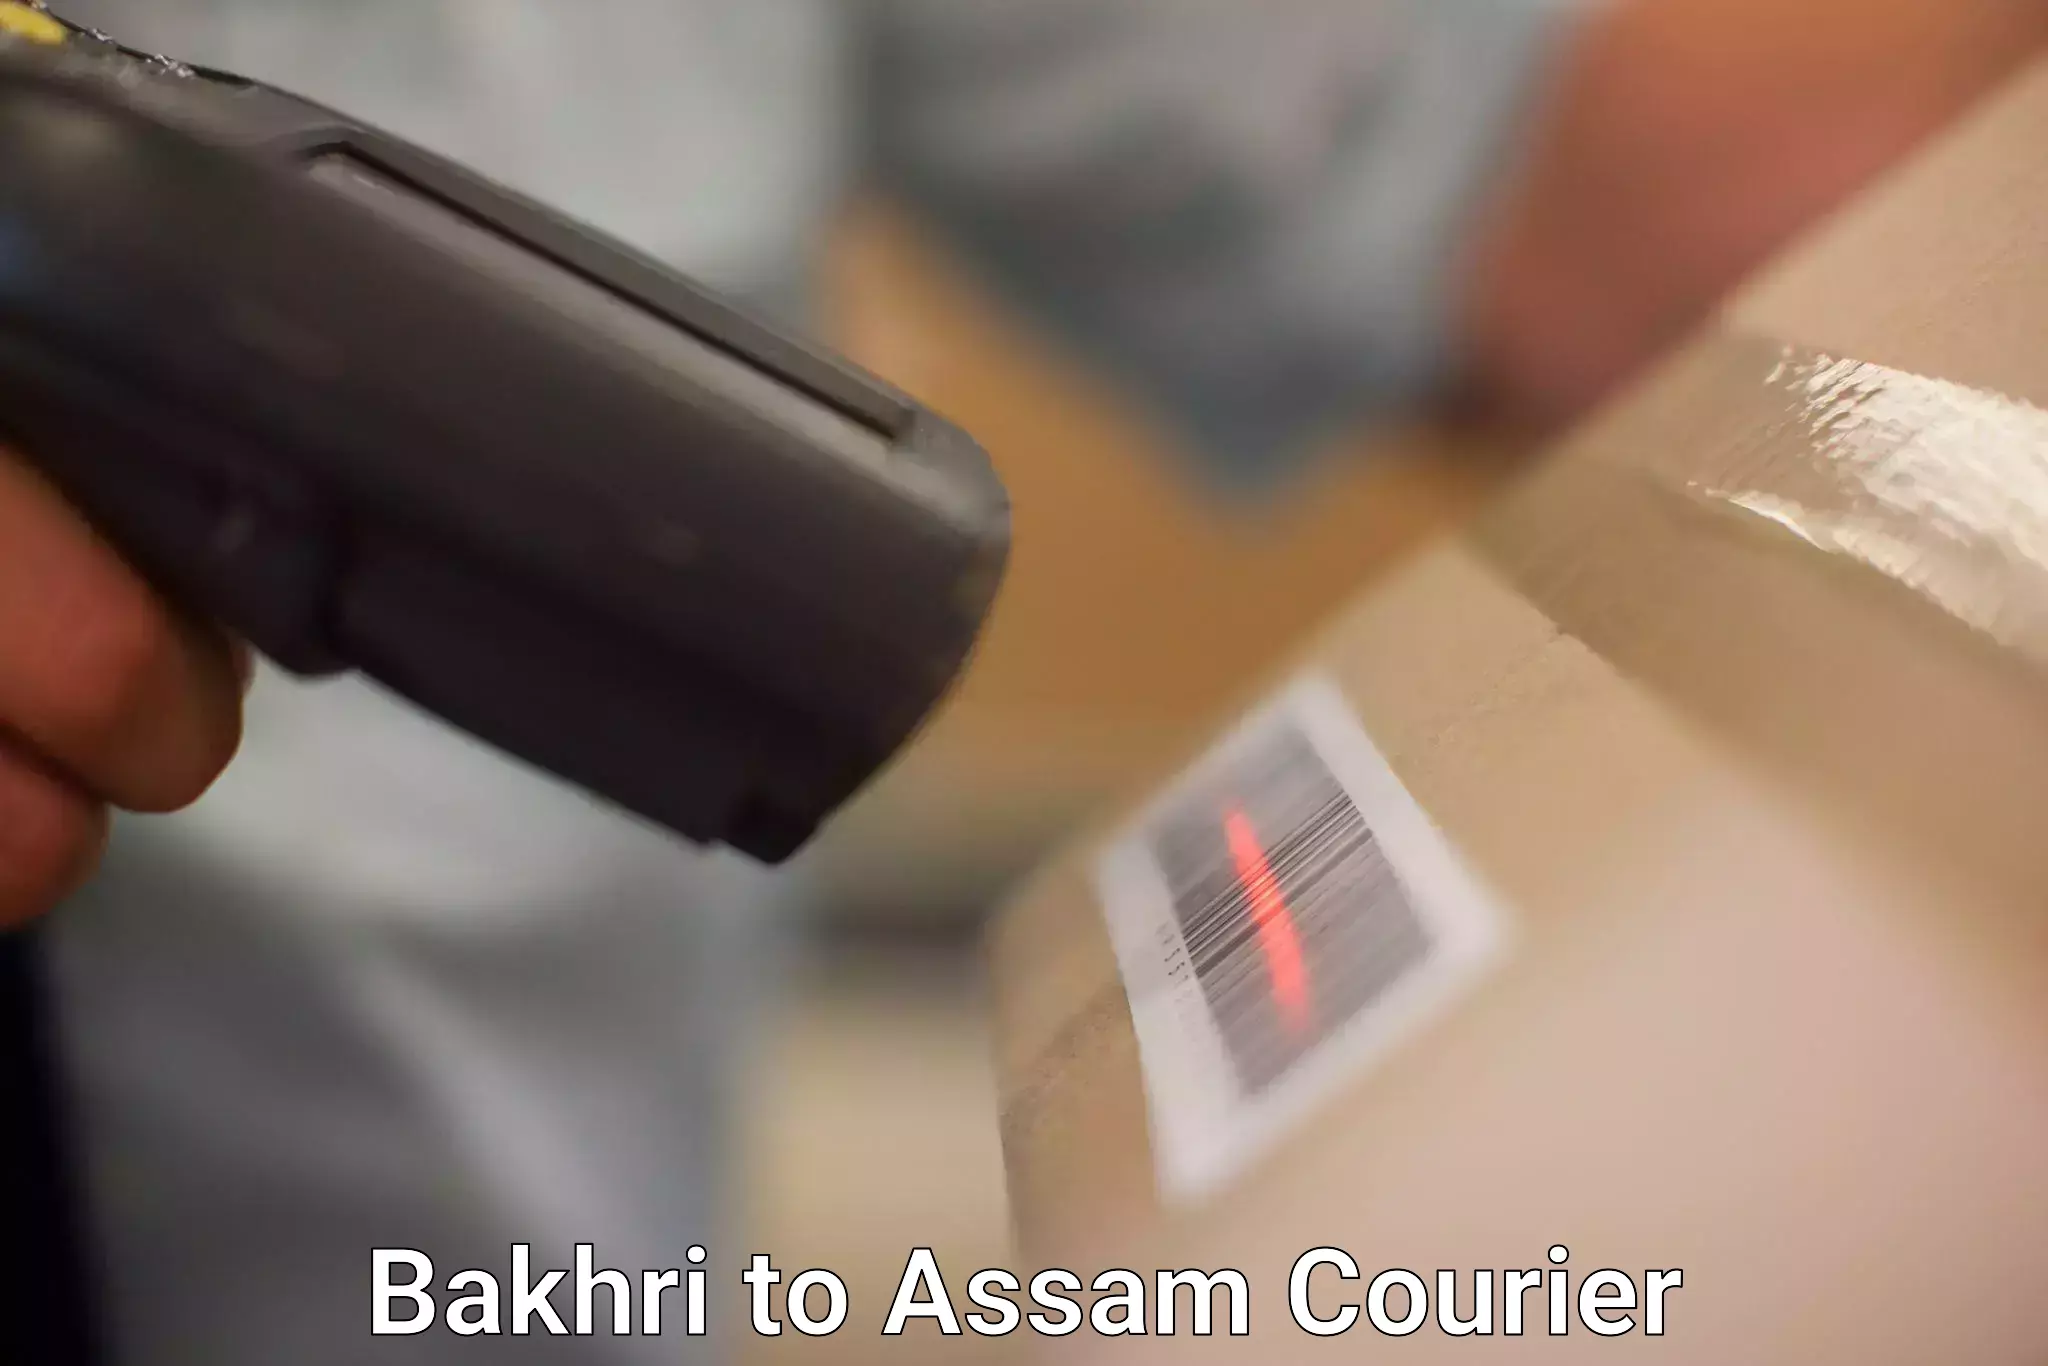 Cash on delivery service Bakhri to Dehurda